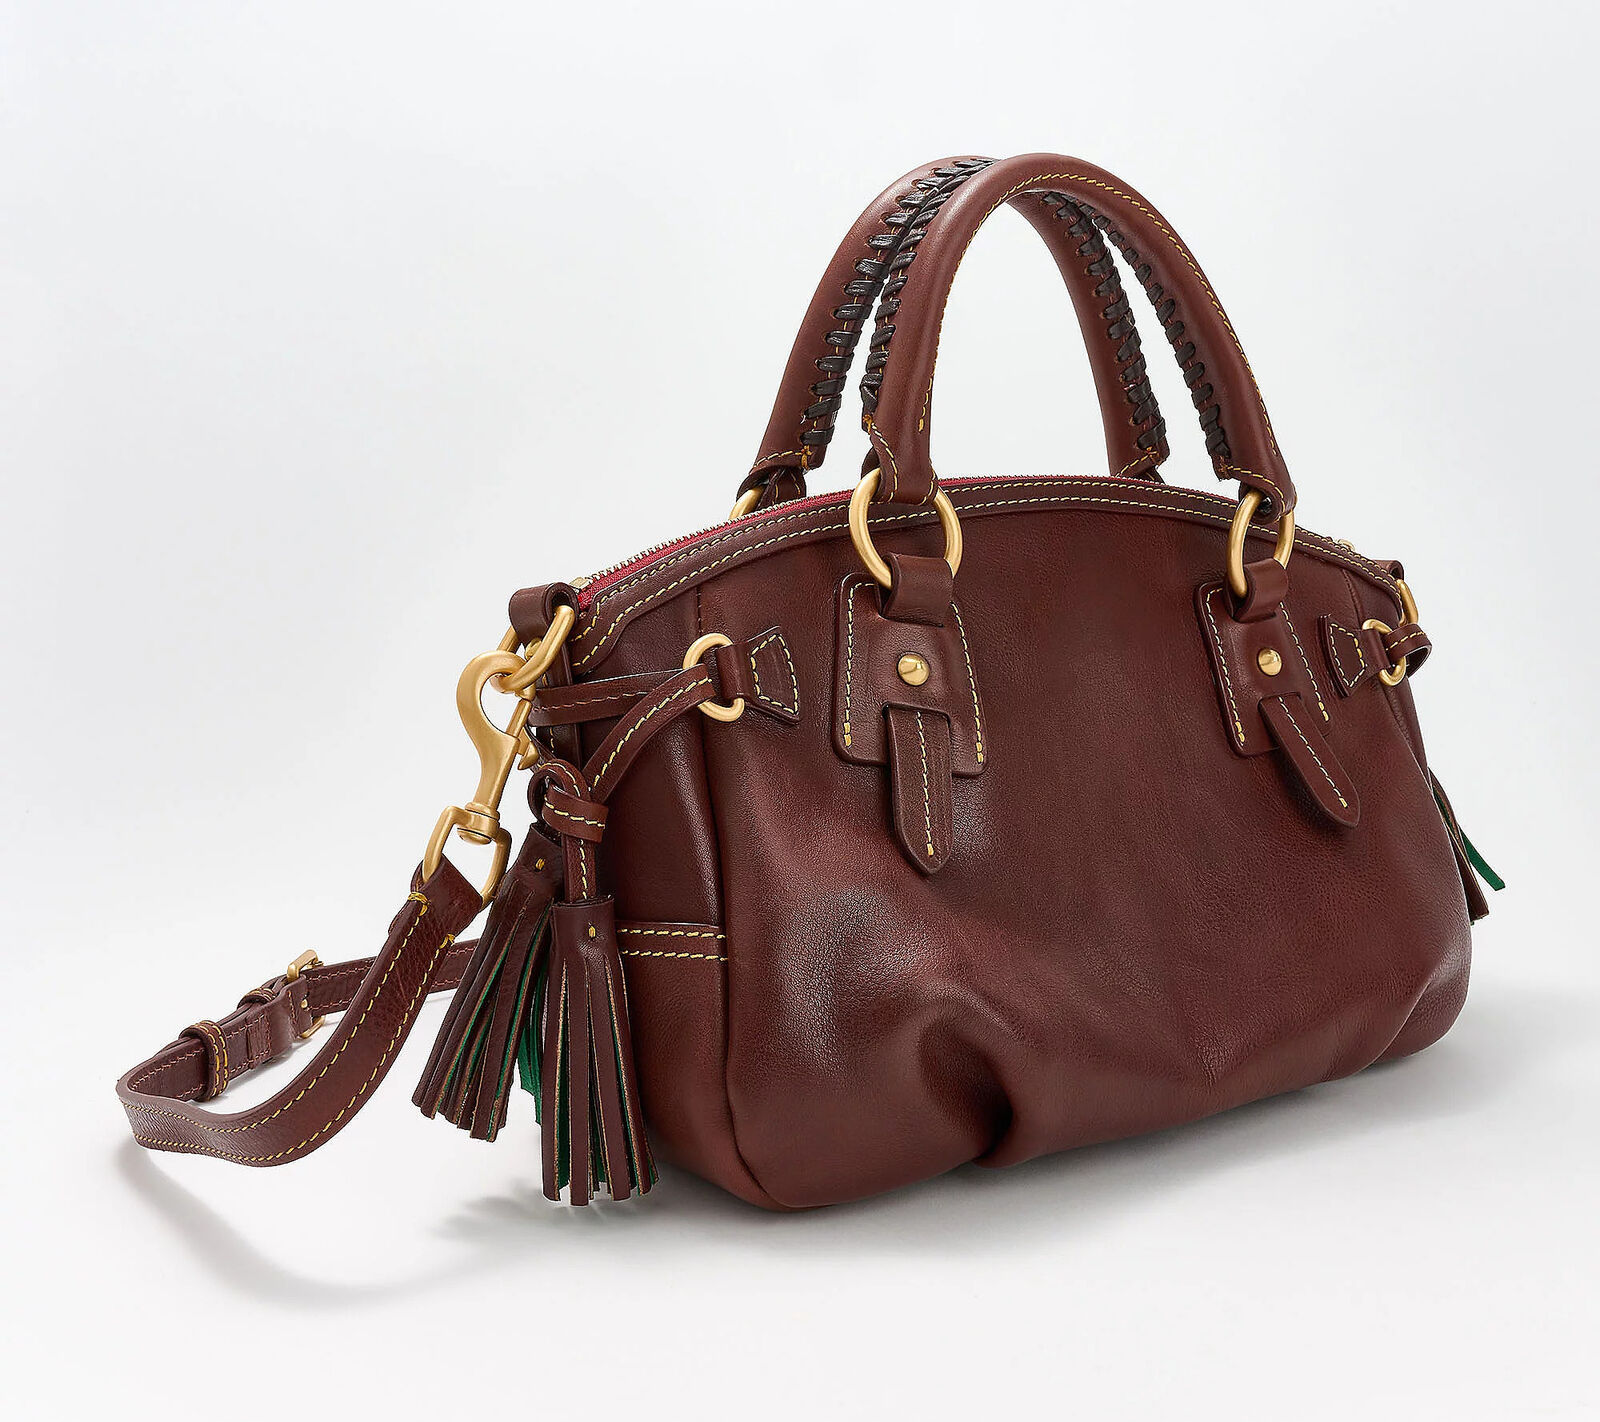 Dooney & Bourke Florentine Leather Medium Mail Satchel Hand Bag Chestnut New